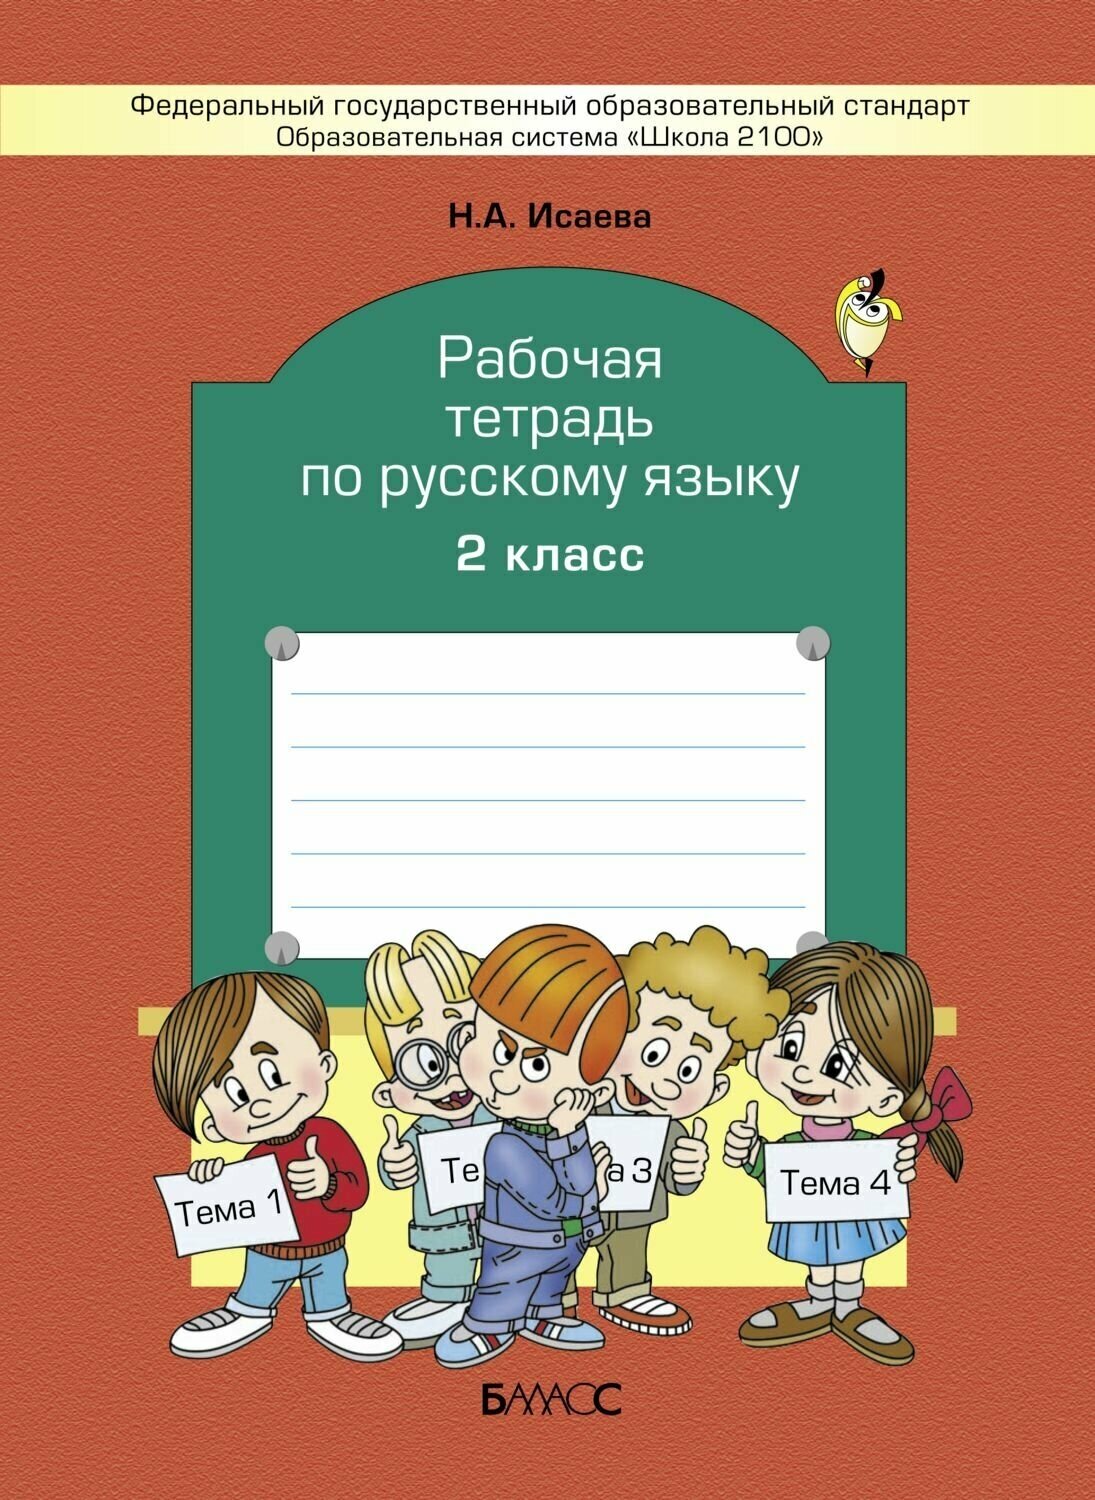 Рабочая тетрадь по русскому языку. 2 класс - фото №2